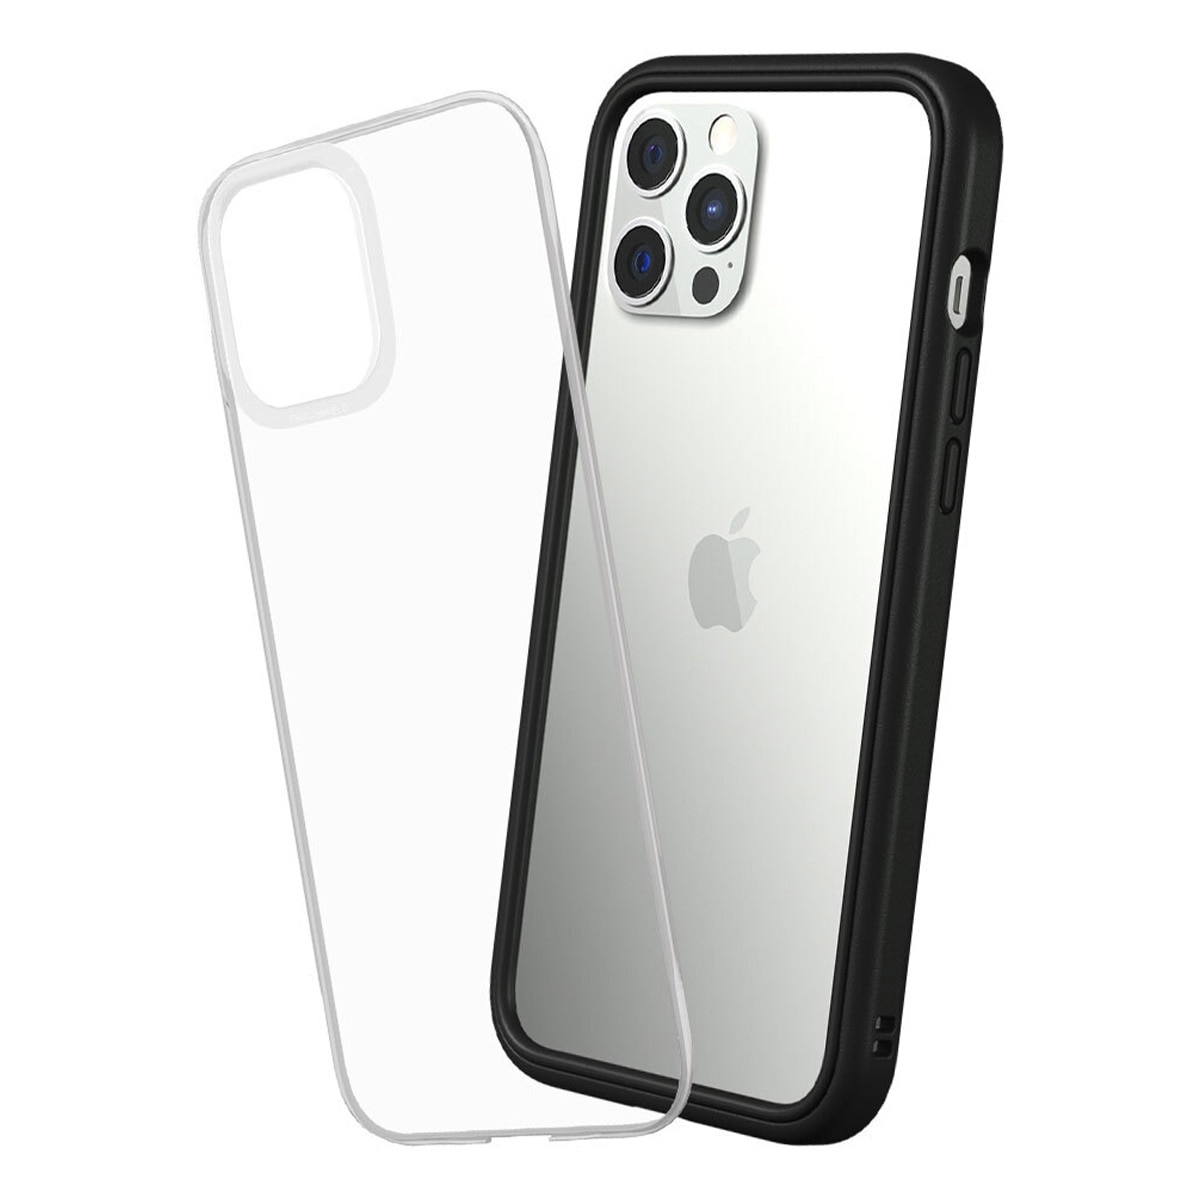 犀牛盾 iPhone 12 Pro Max Mod NX 手機殼 + 9H 3D滿版玻璃保護貼 黑